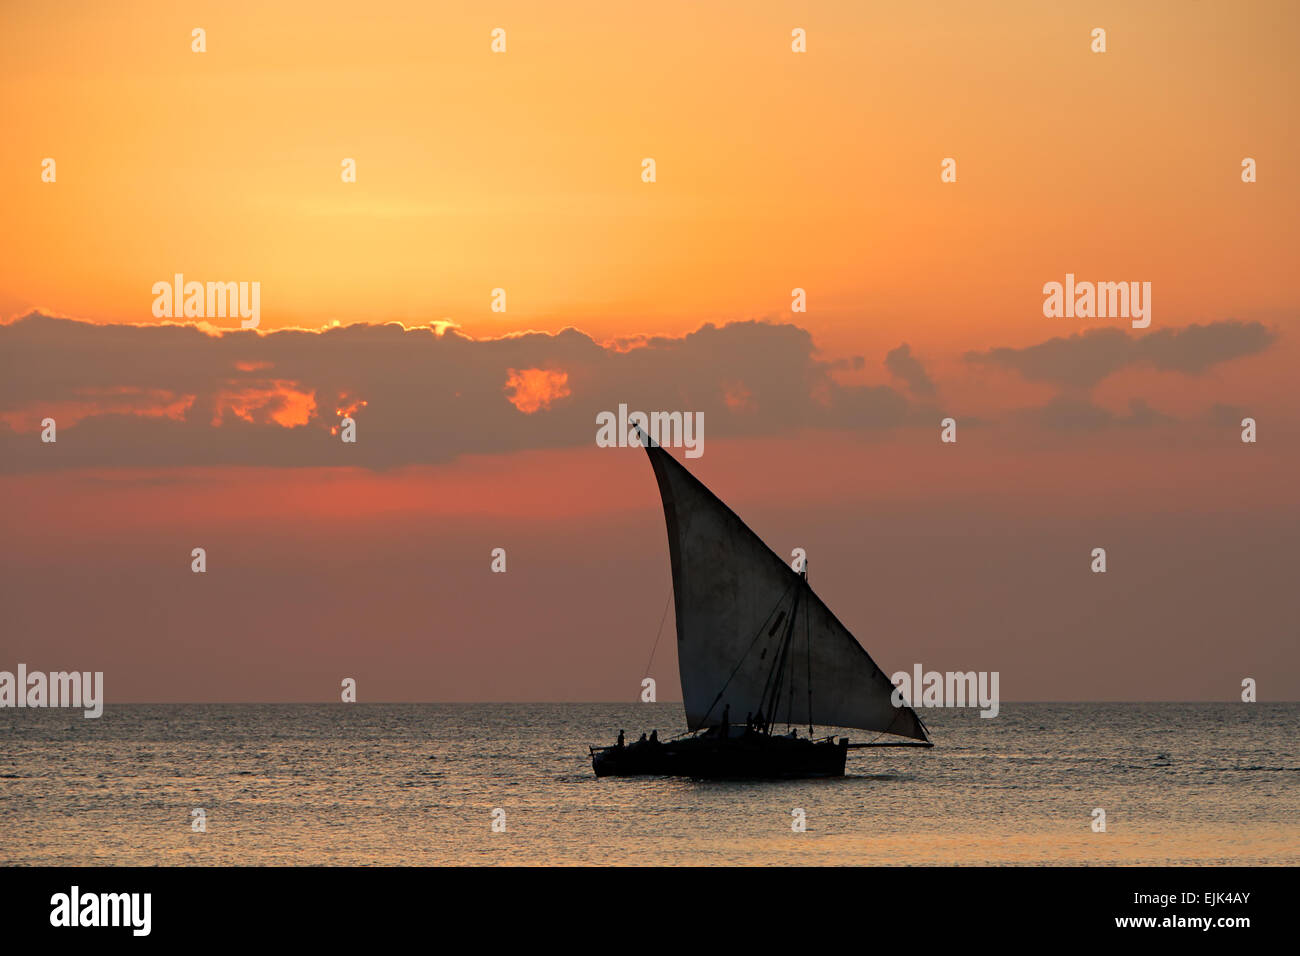 Voilier (dhow) sur l'eau au coucher du soleil avec les nuages, l'île de Zanzibar Banque D'Images